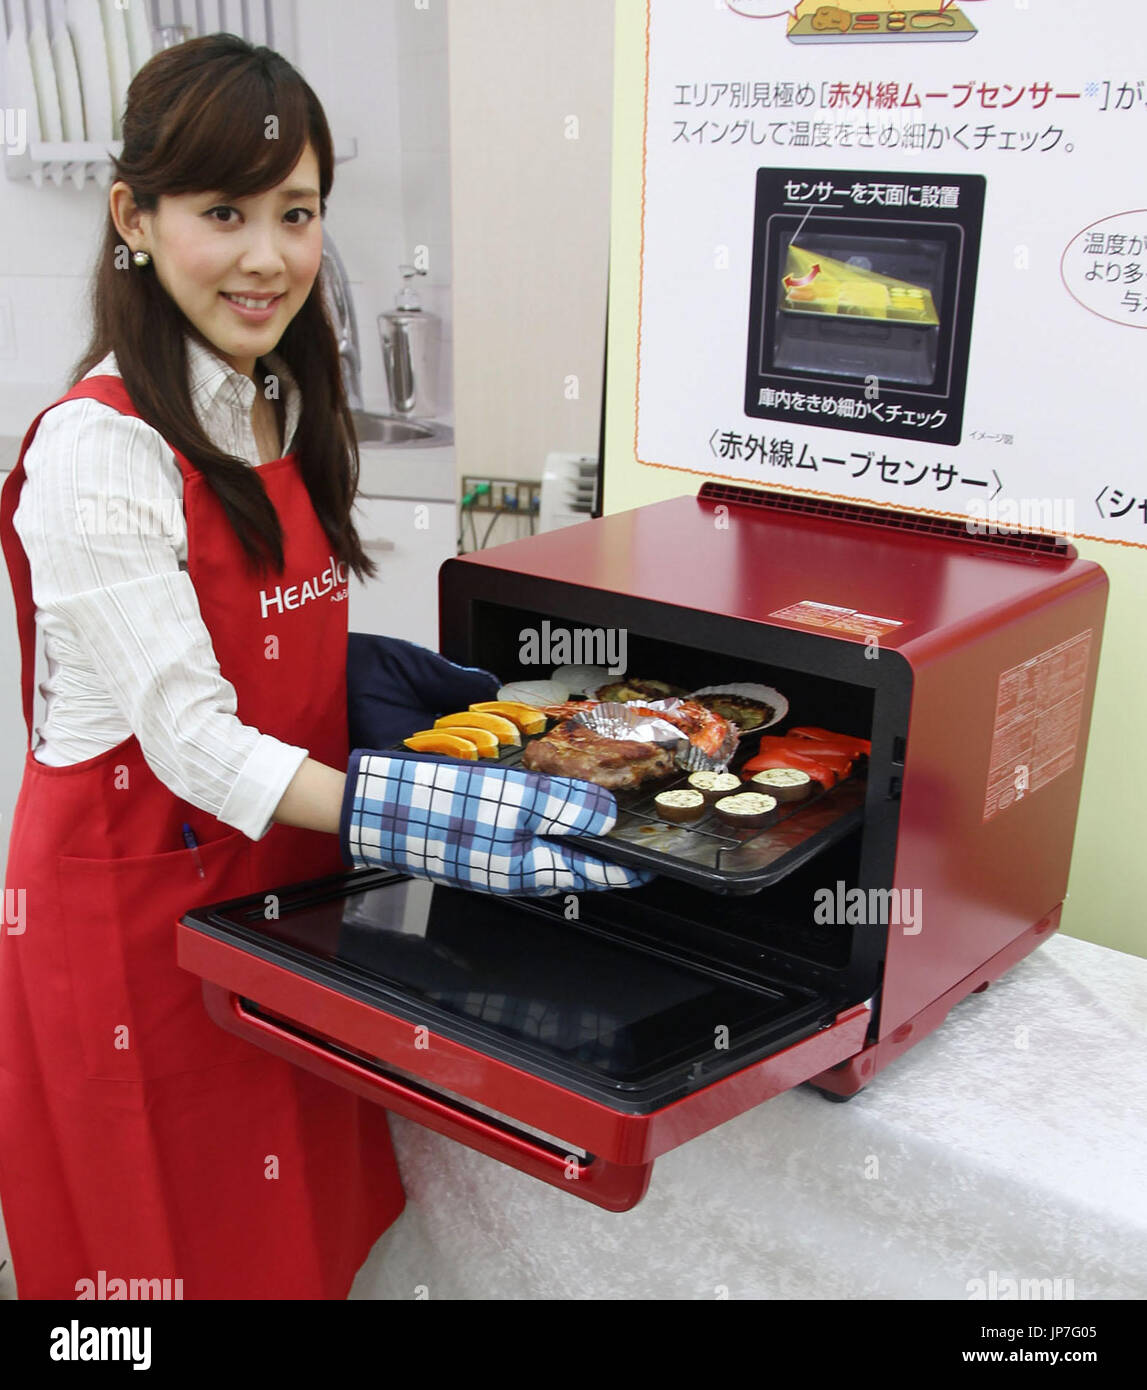 Sharp Corp. presenta un nuevo horno microondas, 'AX-XP200' en su serie  Healsio en Osaka, en el oeste de Japón, el 3 de junio de 2015. Permite la  cocción simultánea de alimentos a